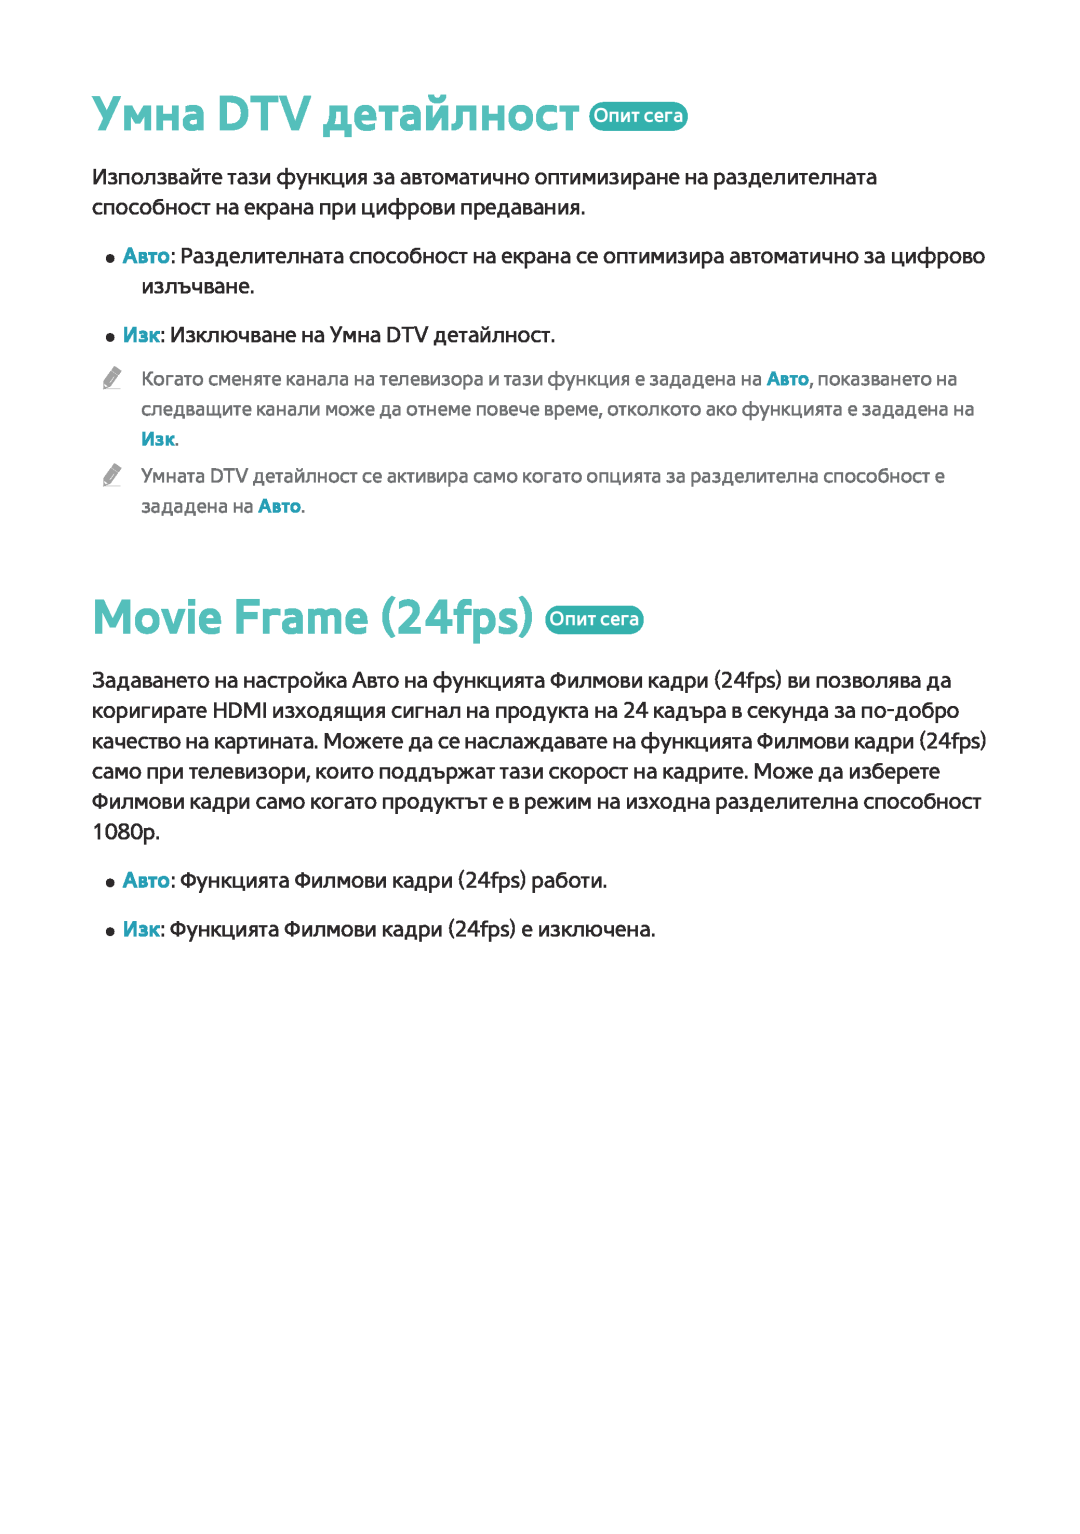 Samsung BD-F8500/EN, BD-F6900/EN manual Умна DTV детайлност Опит сега, Movie Frame 24fps Опит сега 